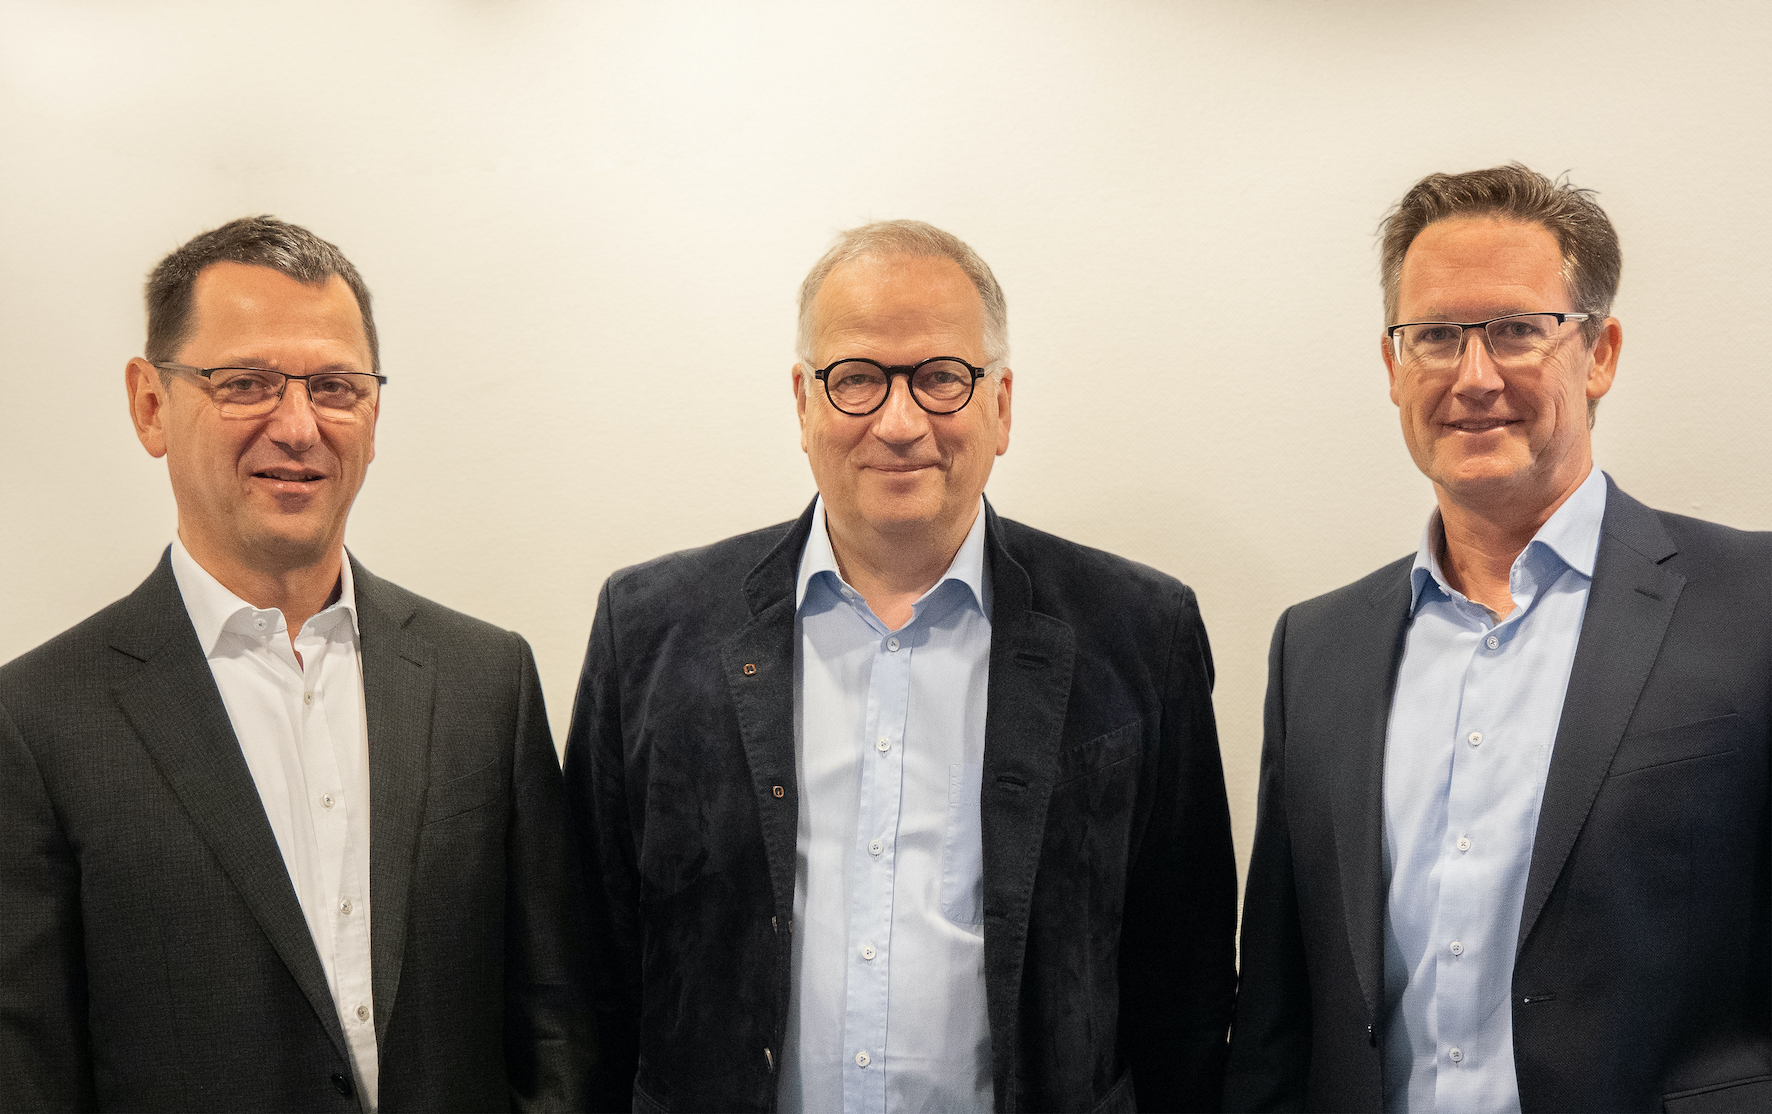 v.l.n.r Frank Heines (Mitglied des Vorstands bei SpiraTec), Dr. Uwe Ganzer (Vorstand der Onoff AG), Andreas Schadt (Vorstand der SpiraTec AG) (Bild: SpiraTec AG)